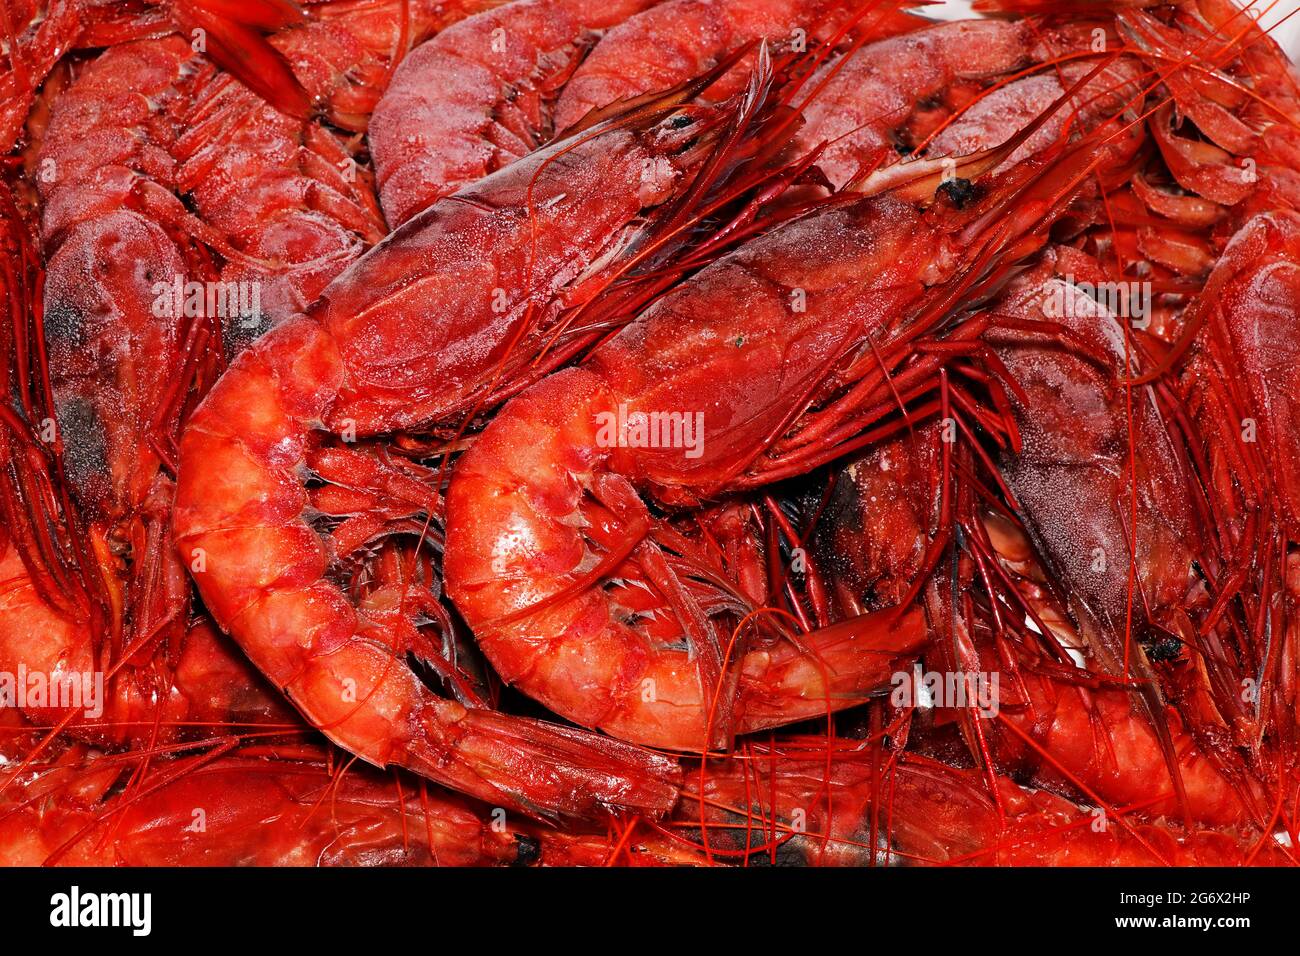 crevettes rouges italiennes ou crevettes en gros plan connu sous le nom de gambero roso Banque D'Images